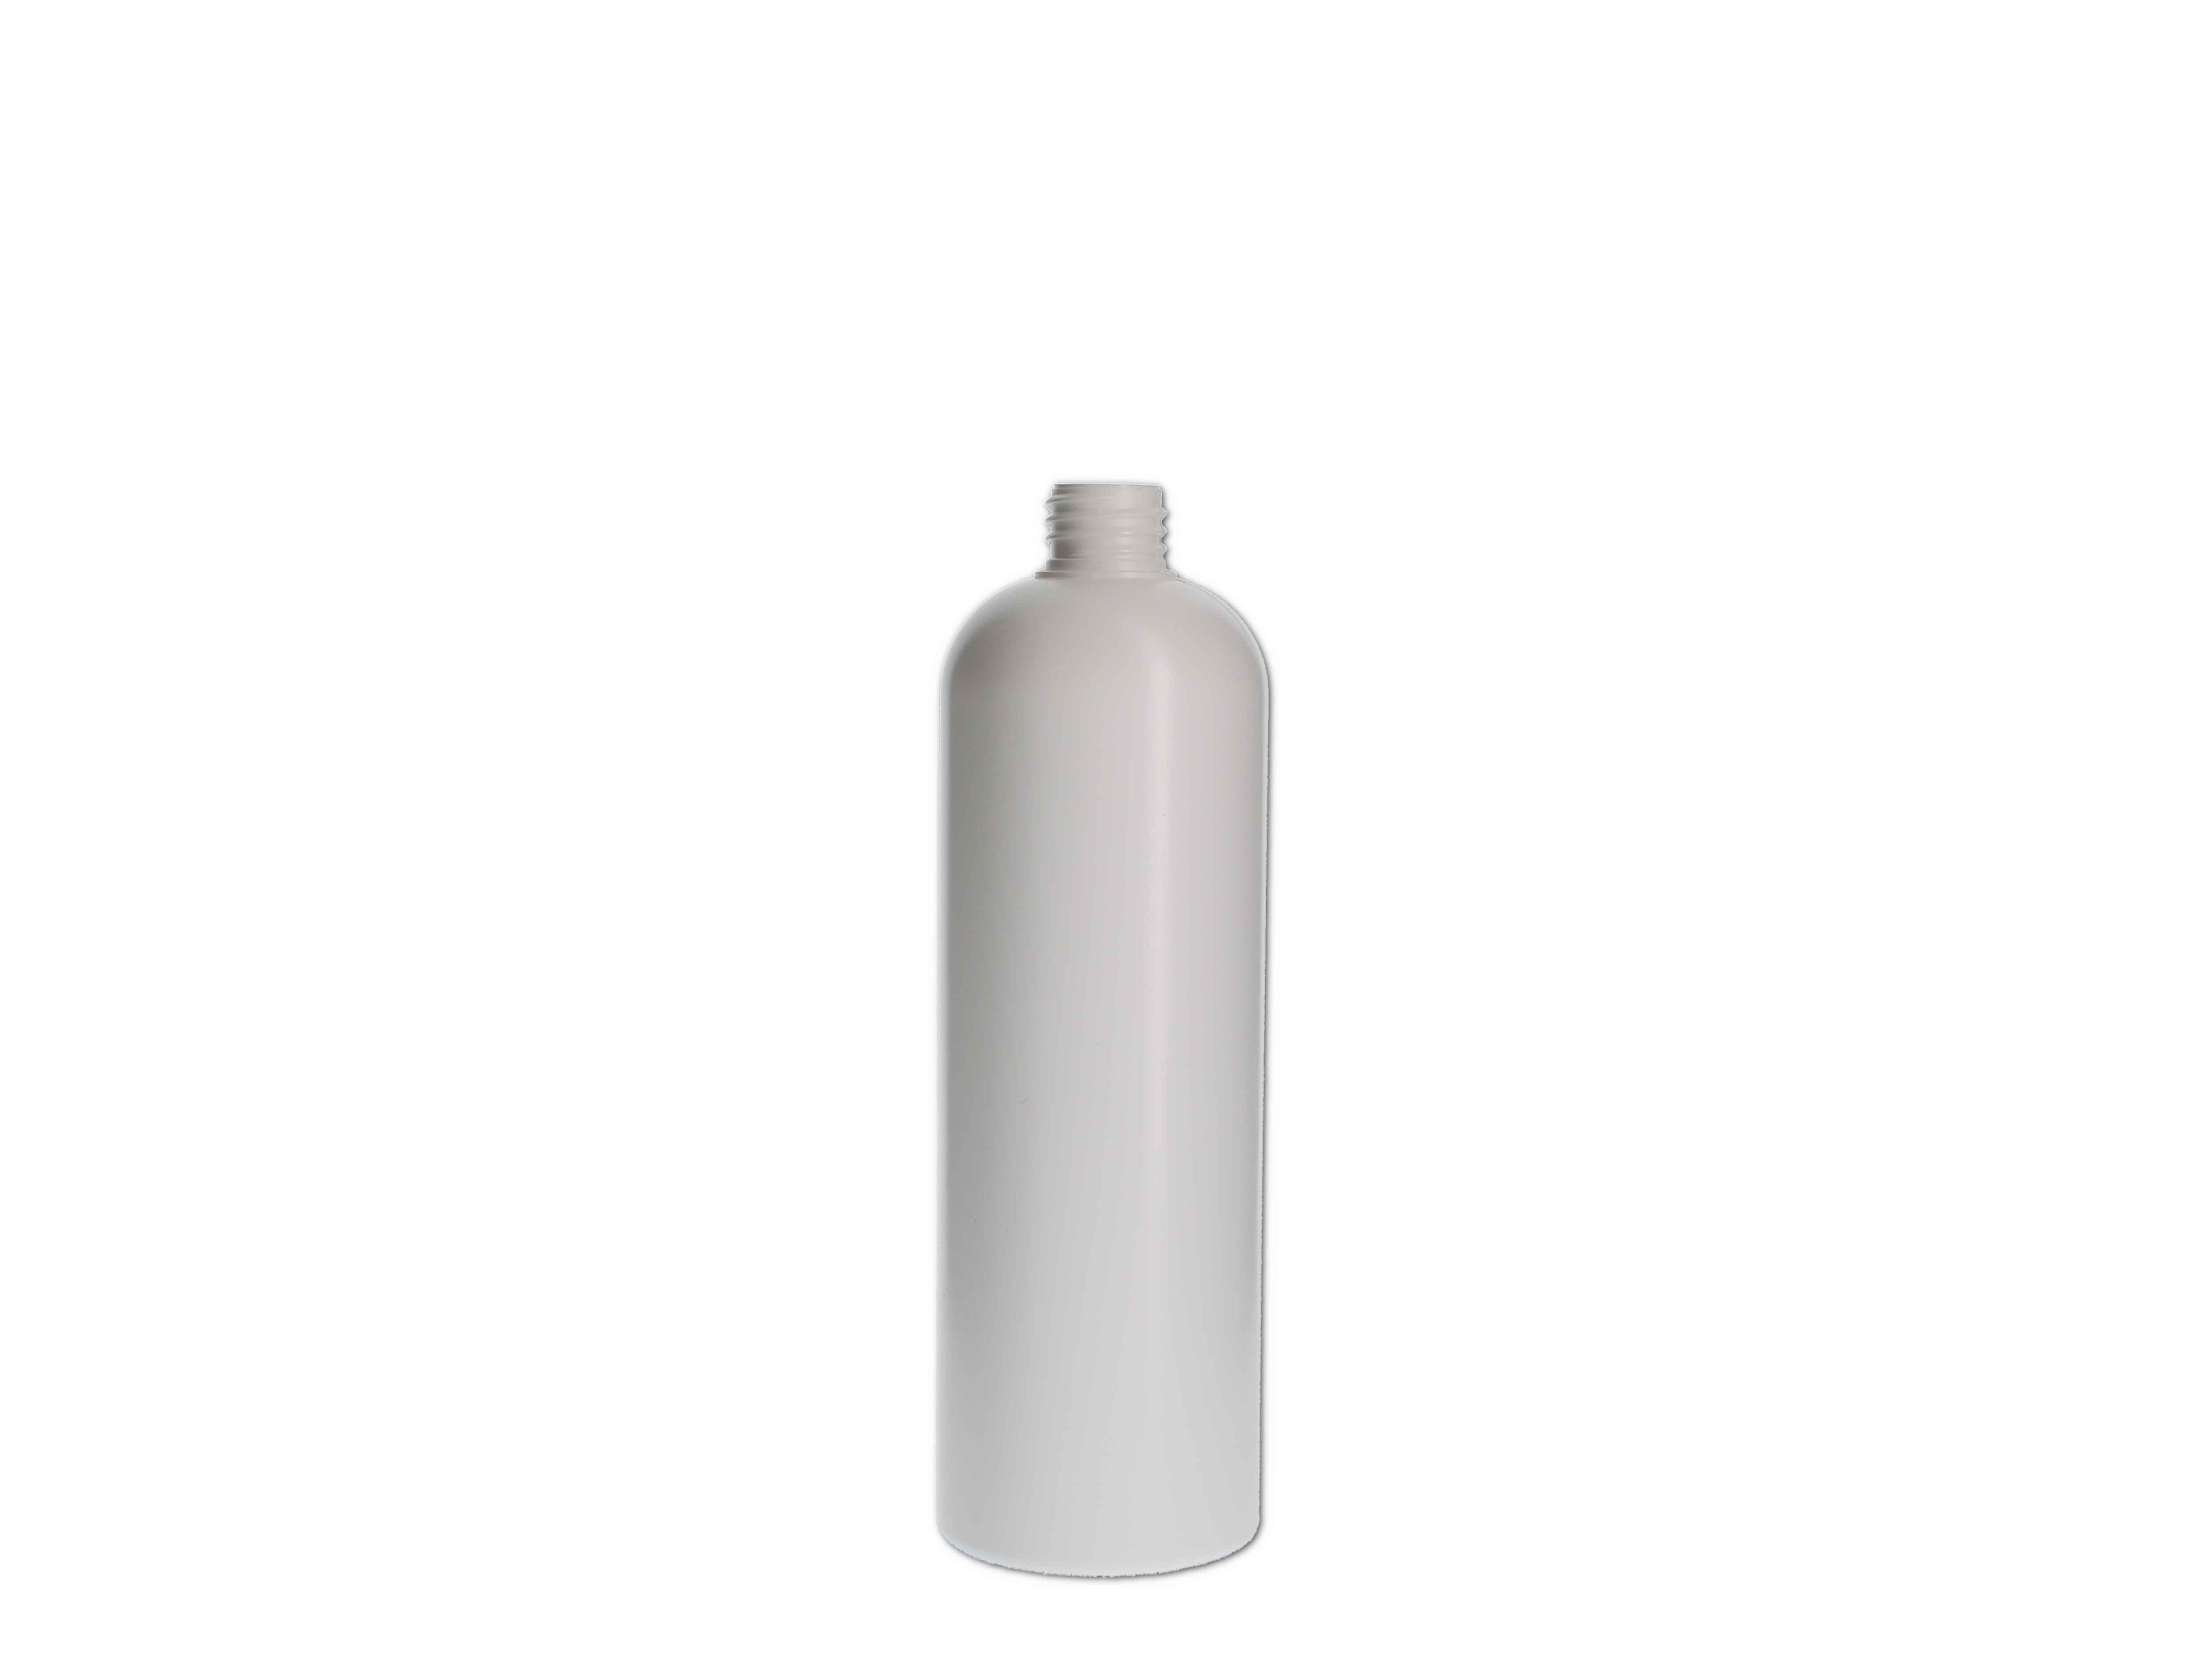    Kosmetikflasche, Kunststoff weiß, rund 300ml